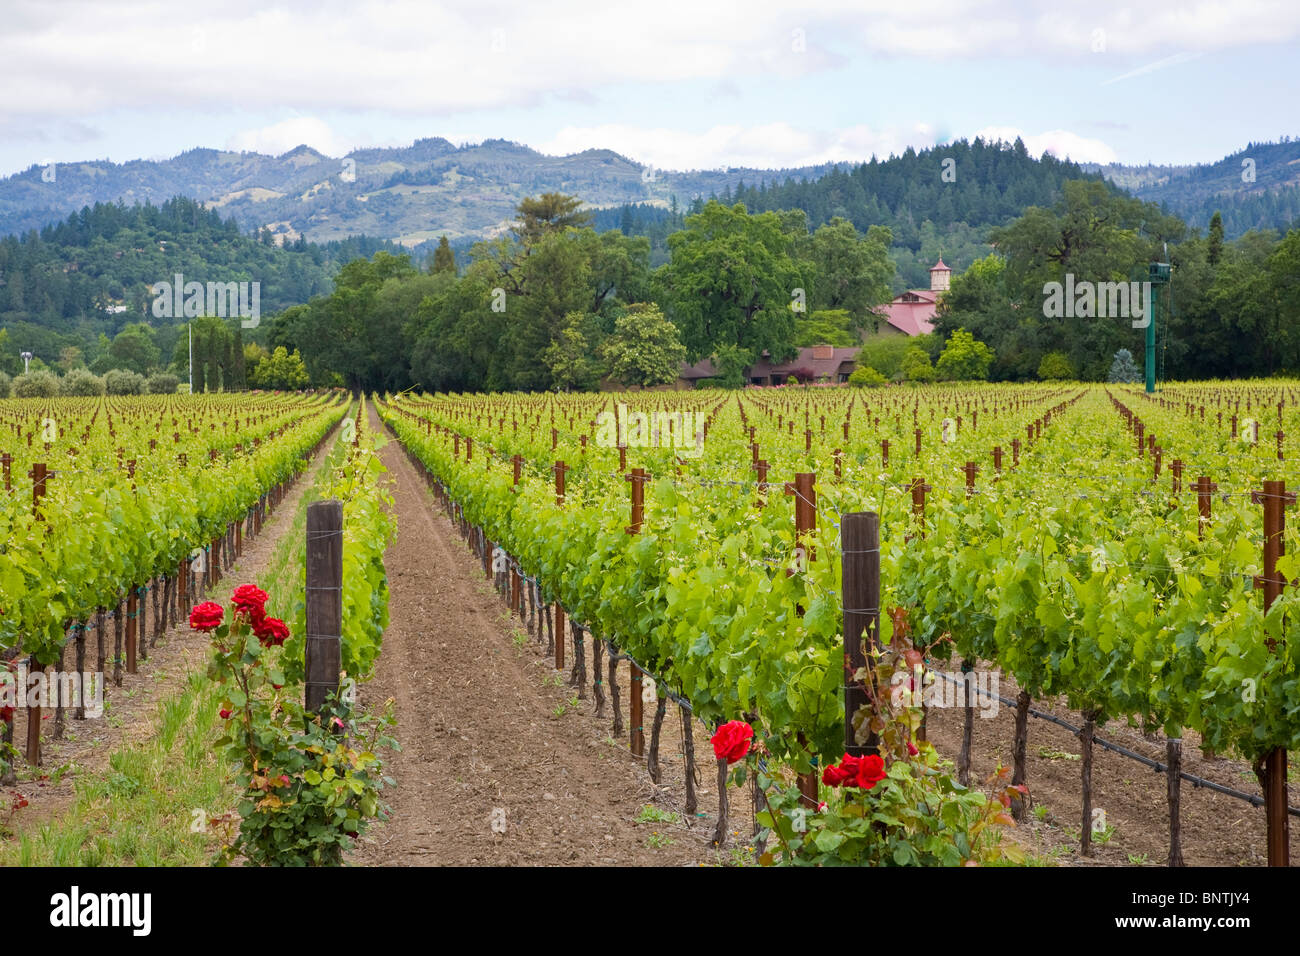 Los viñedos de uvas de primavera en el valle de Napa California Foto de stock